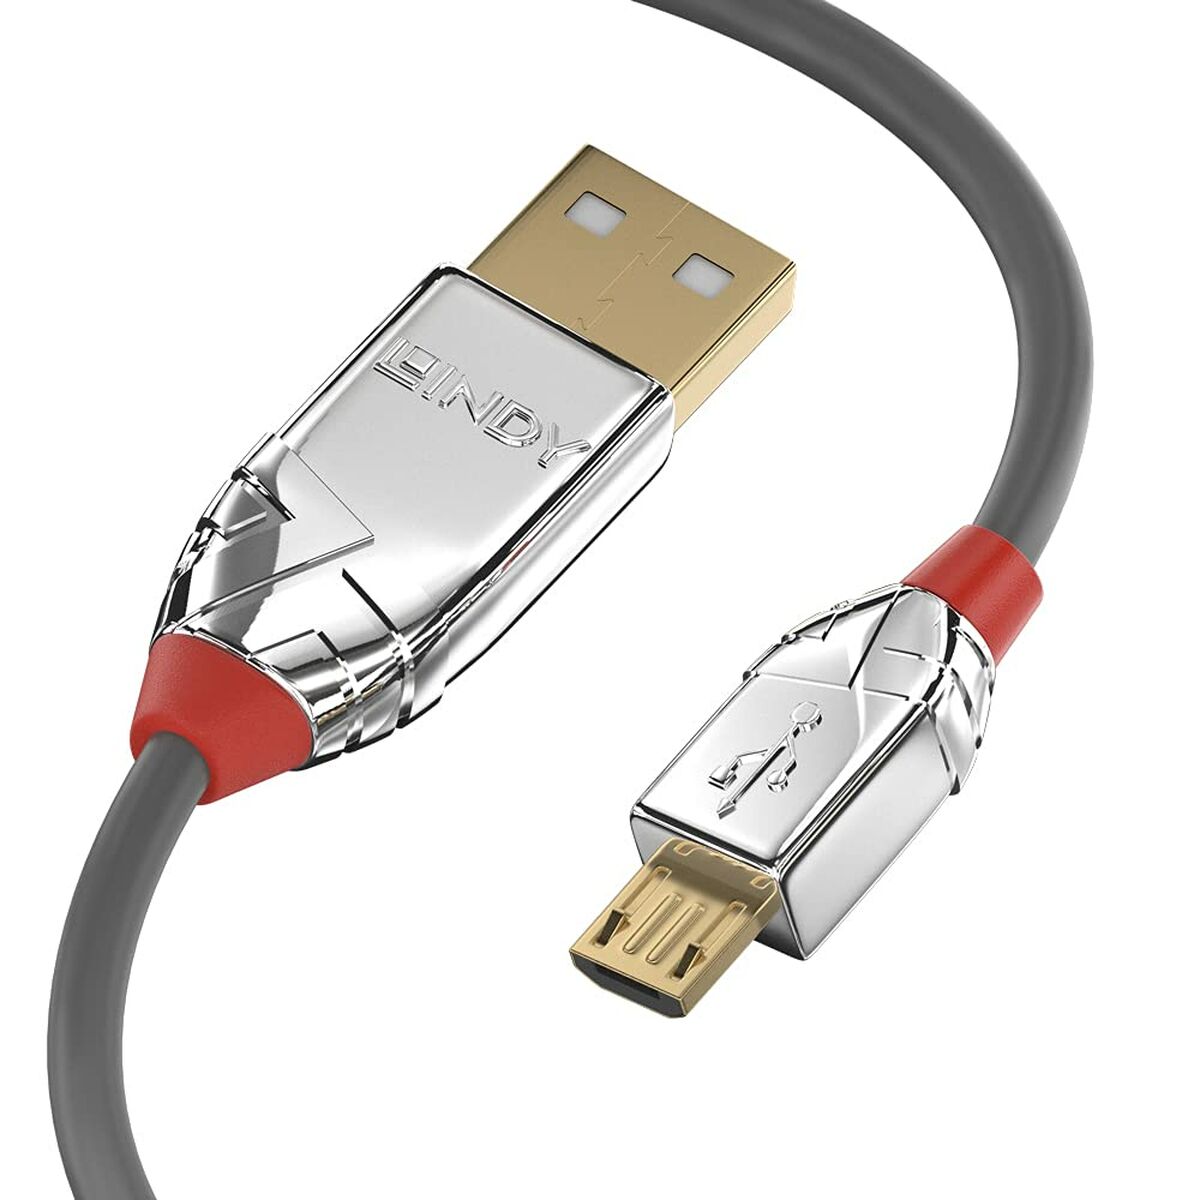 Câble USB 2.0 A vers Micro USB B LINDY 36652 2 m